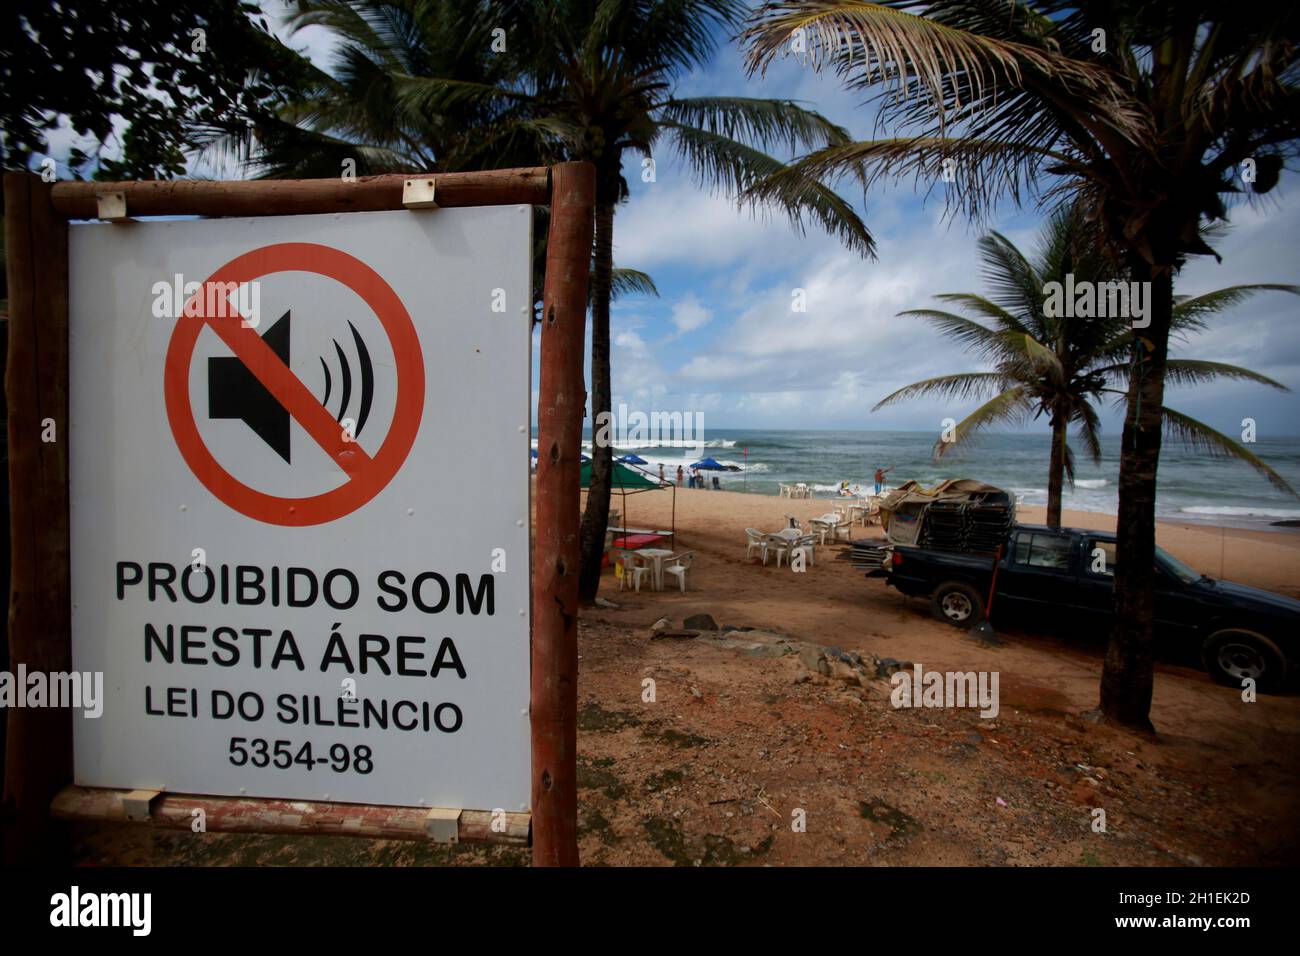 salvador, bahía / brasil - 9 de junio de 2015: Placa informa sobre la prohibición del sonido automotor en la región de la playa Farol de Itapua en la ciudad de Salvador Foto de stock